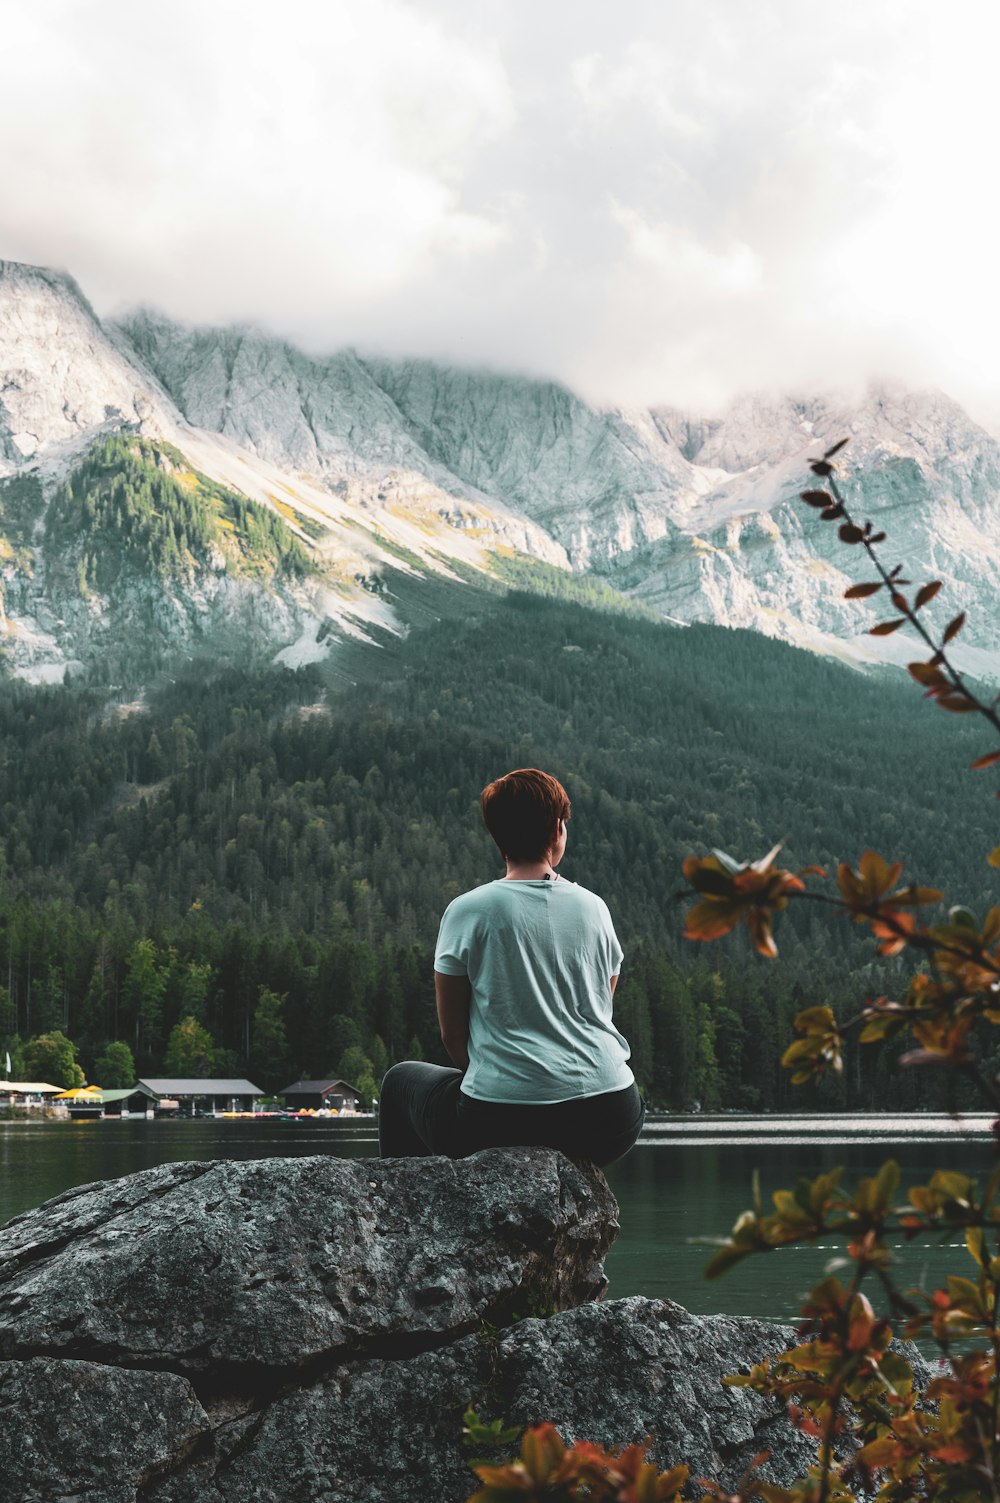 man in white shirt sitting on rock near lake and mountains during daytime